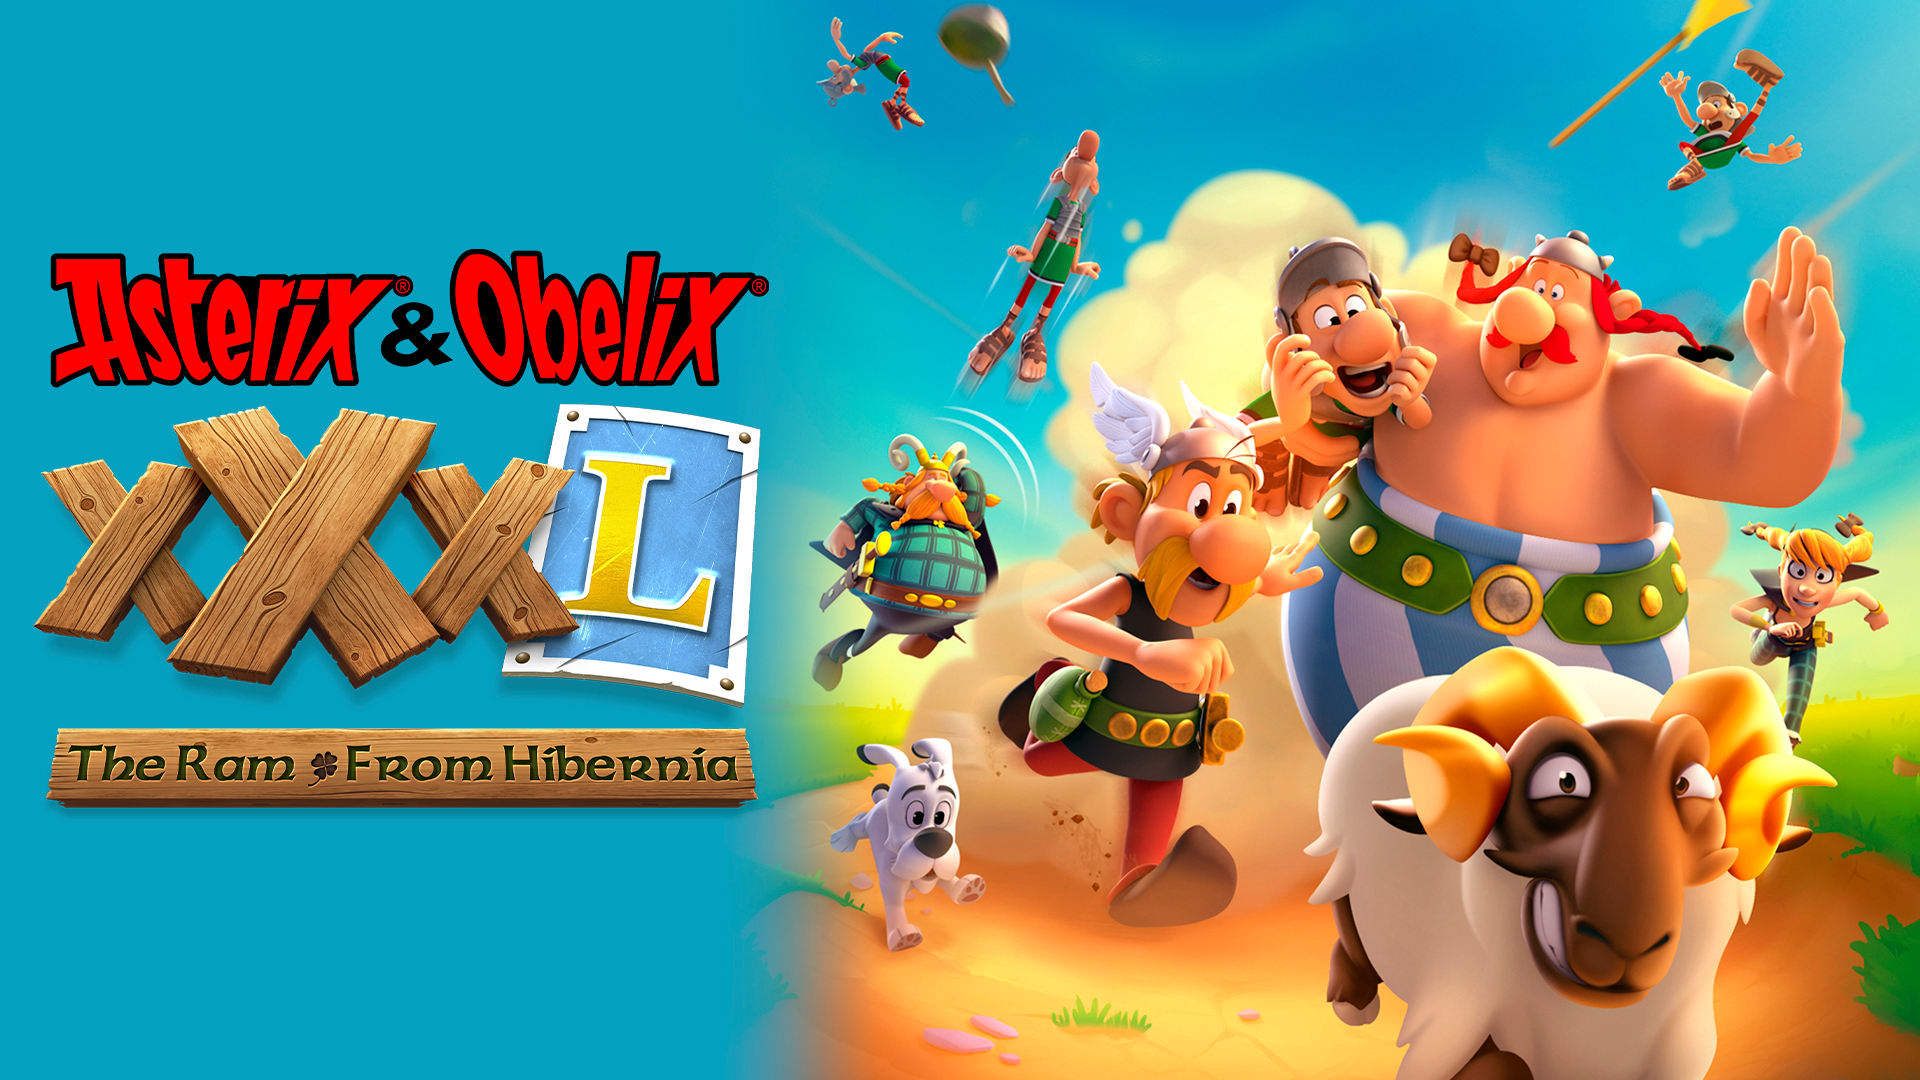 Asterix & Obelix XXXL – The Ram From Hibernia 1